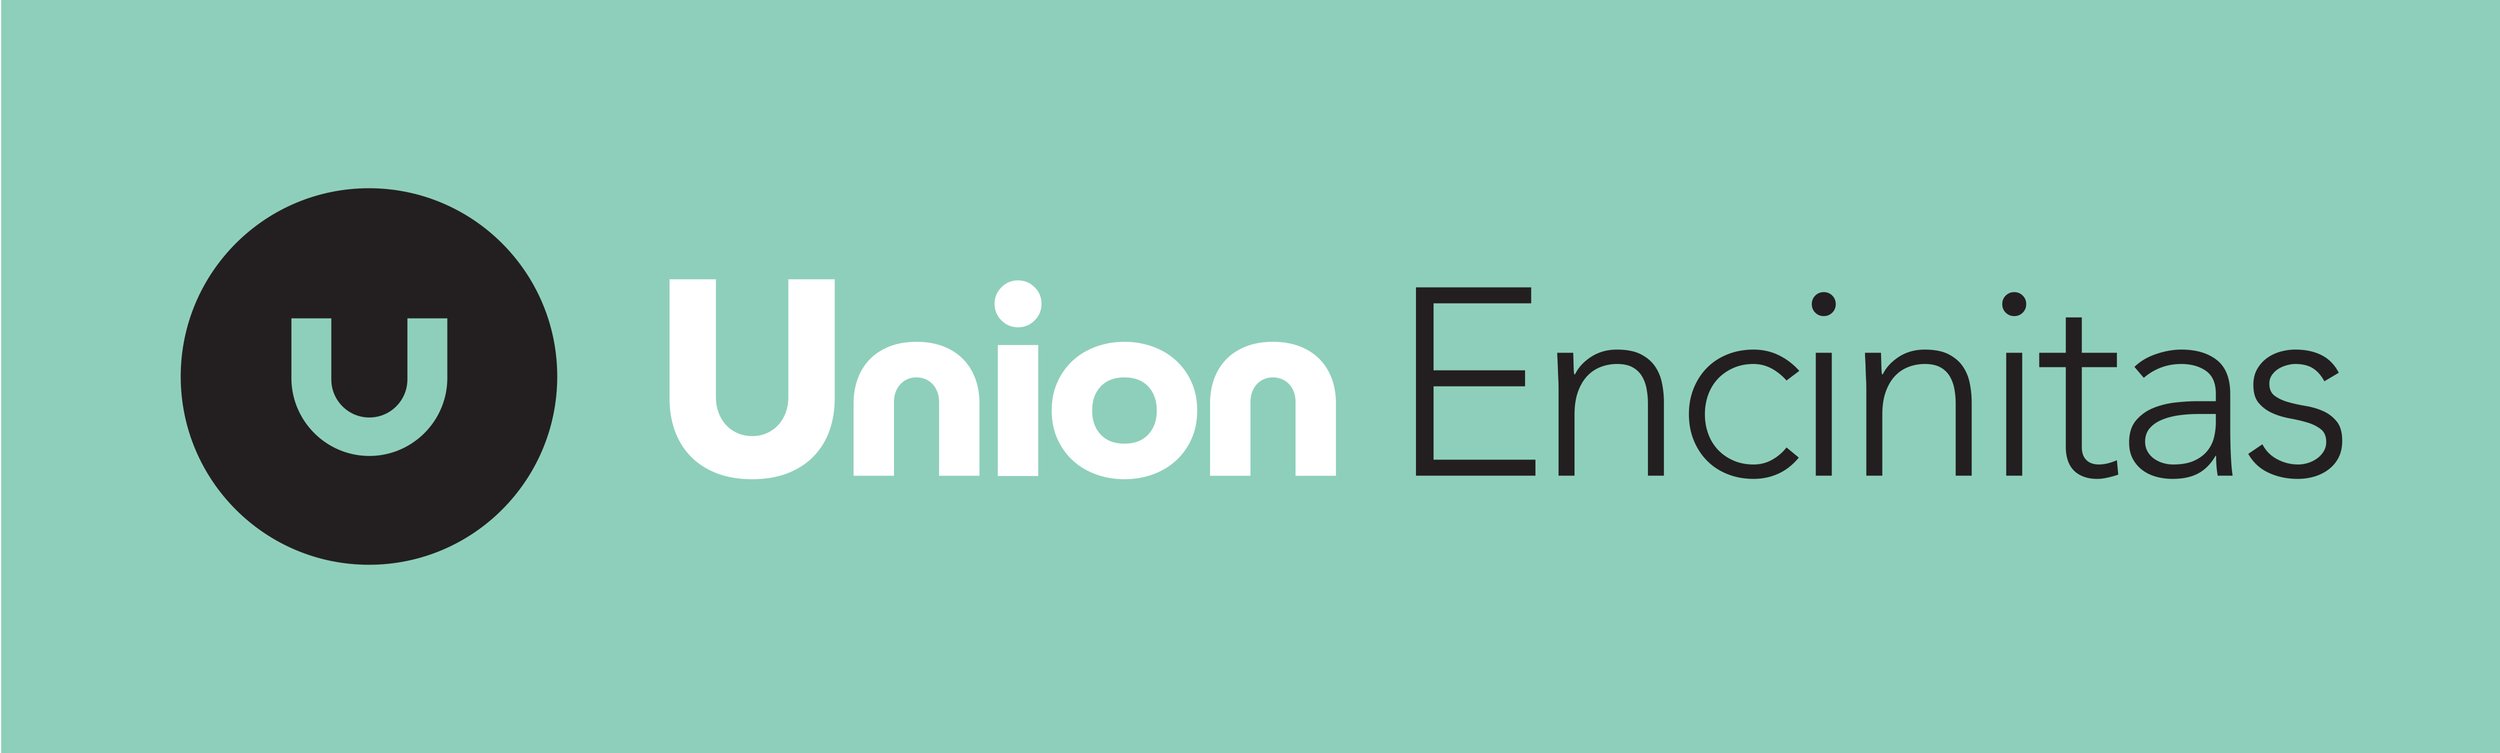 Union Logos_encinitas on location color.jpg